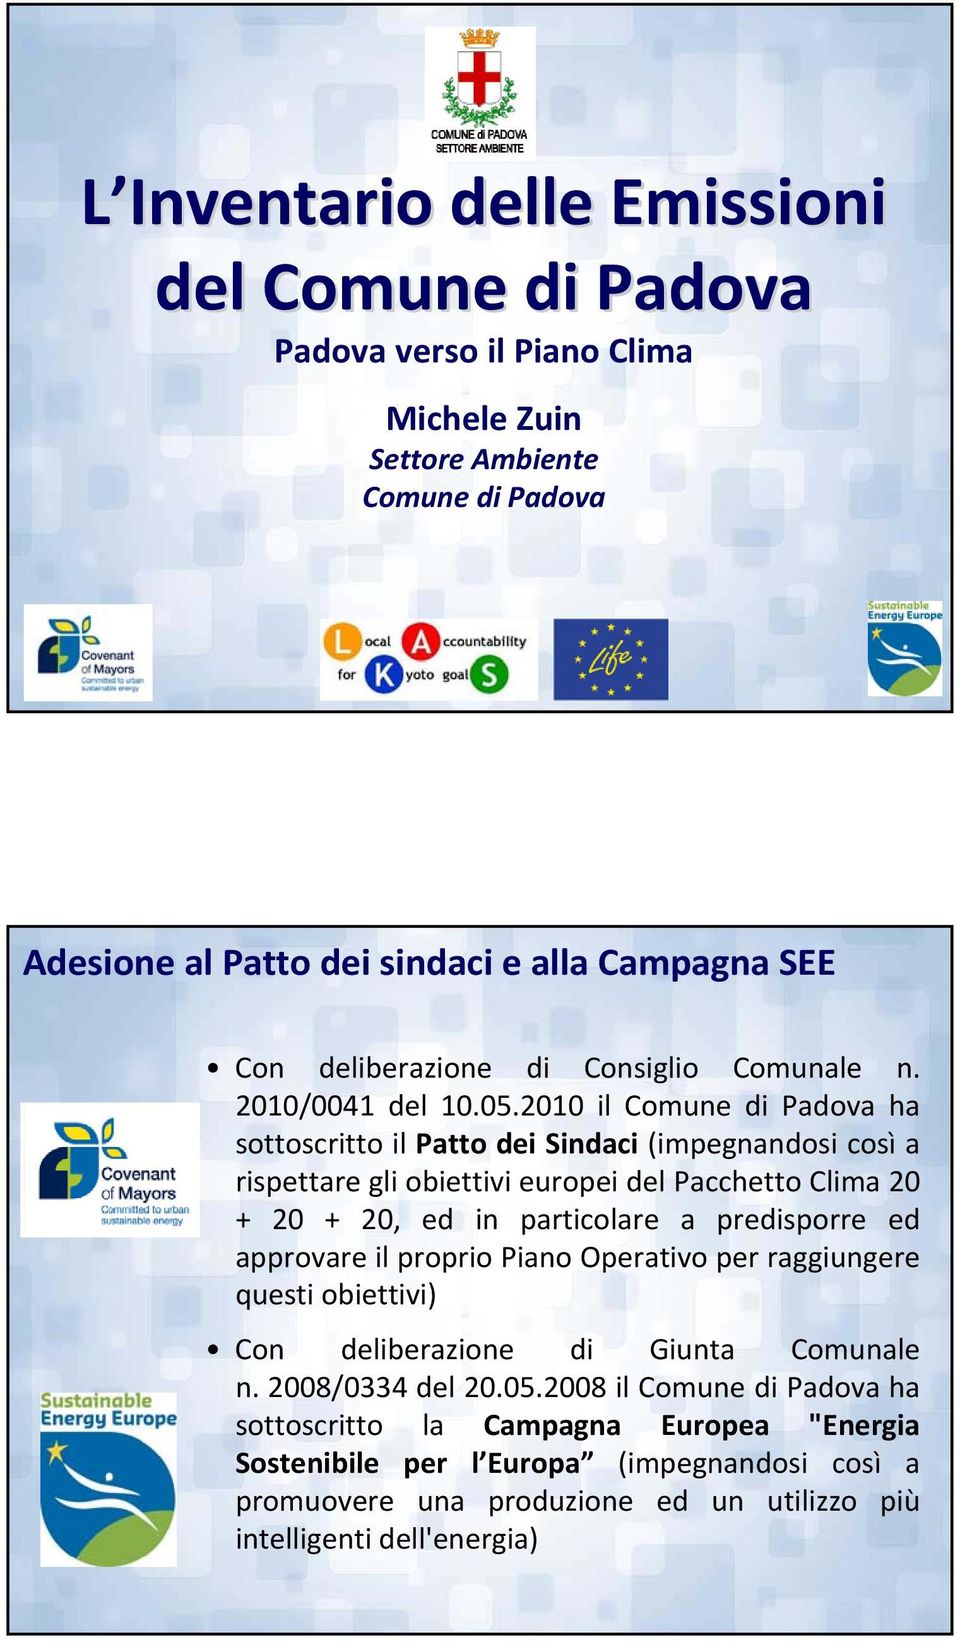 2010 il Comune di Padova ha sottoscritto il Patto dei Sindaci (impegnandosi così a rispettare gli obiettivi europei del Pacchetto Clima 20 + 20 + 20, ed in particolare a predisporre ed